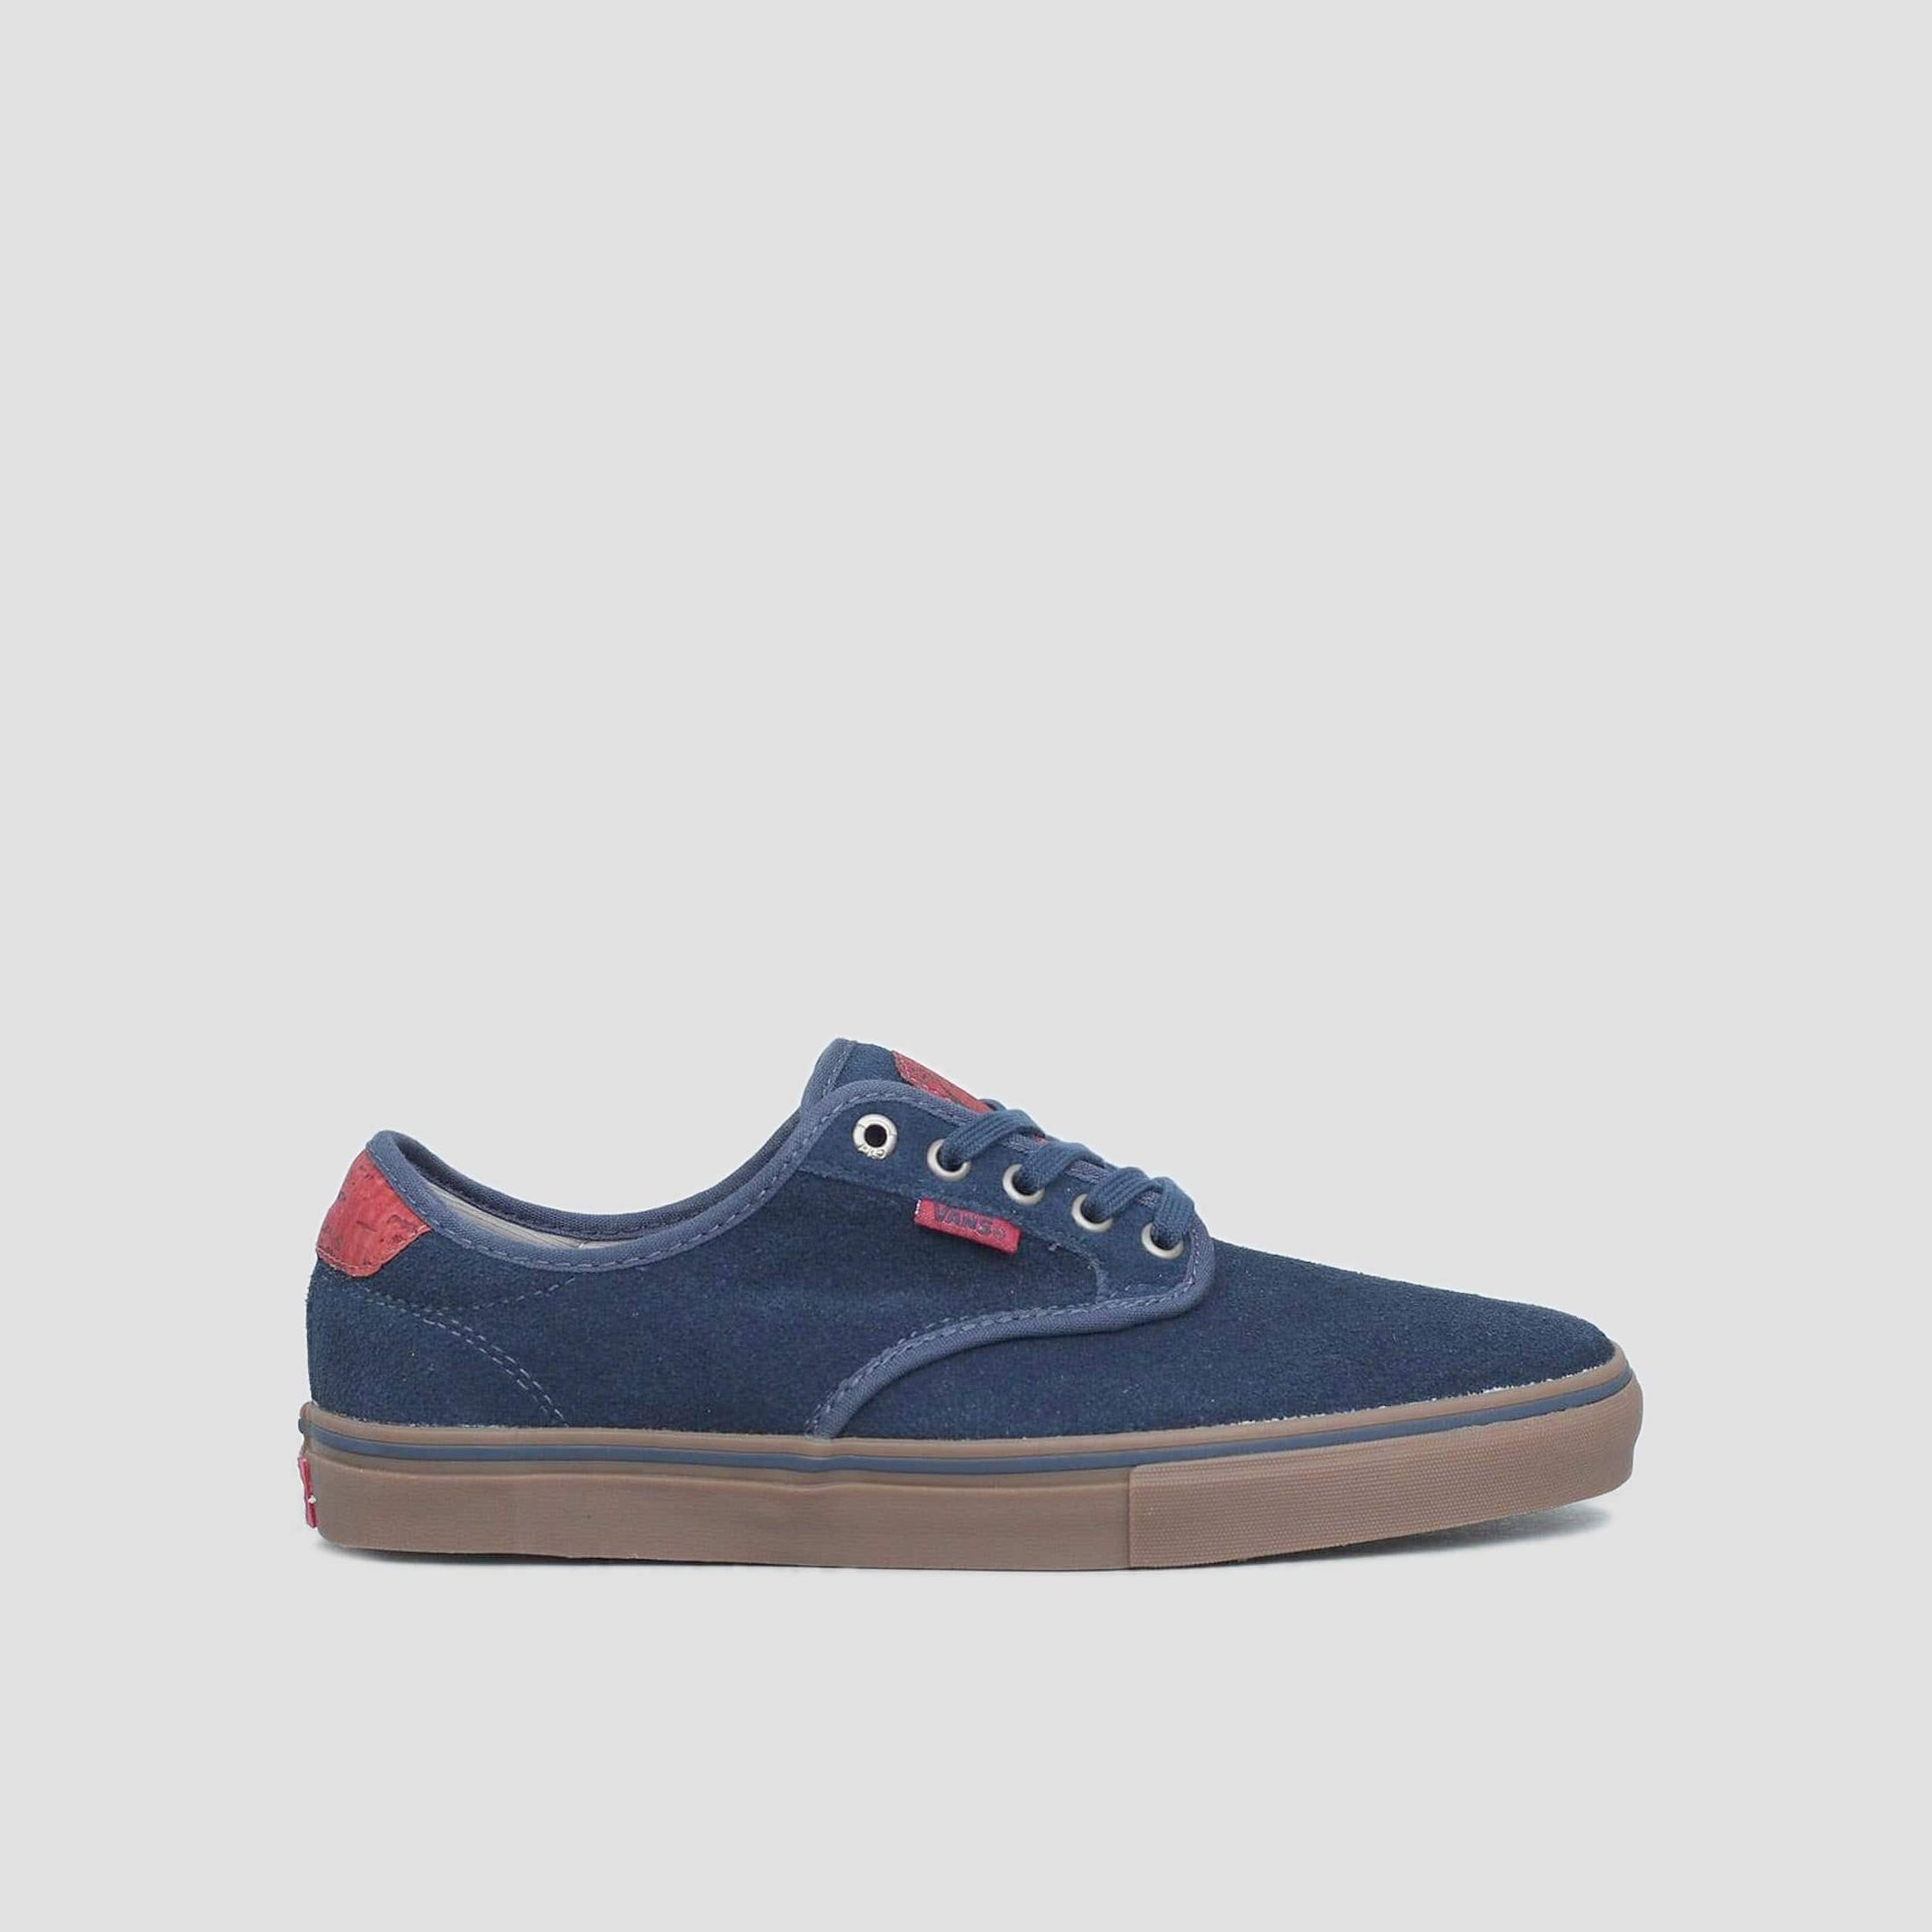 Vans Chima Ferguson Pro Shoes Navy / Gum Suede